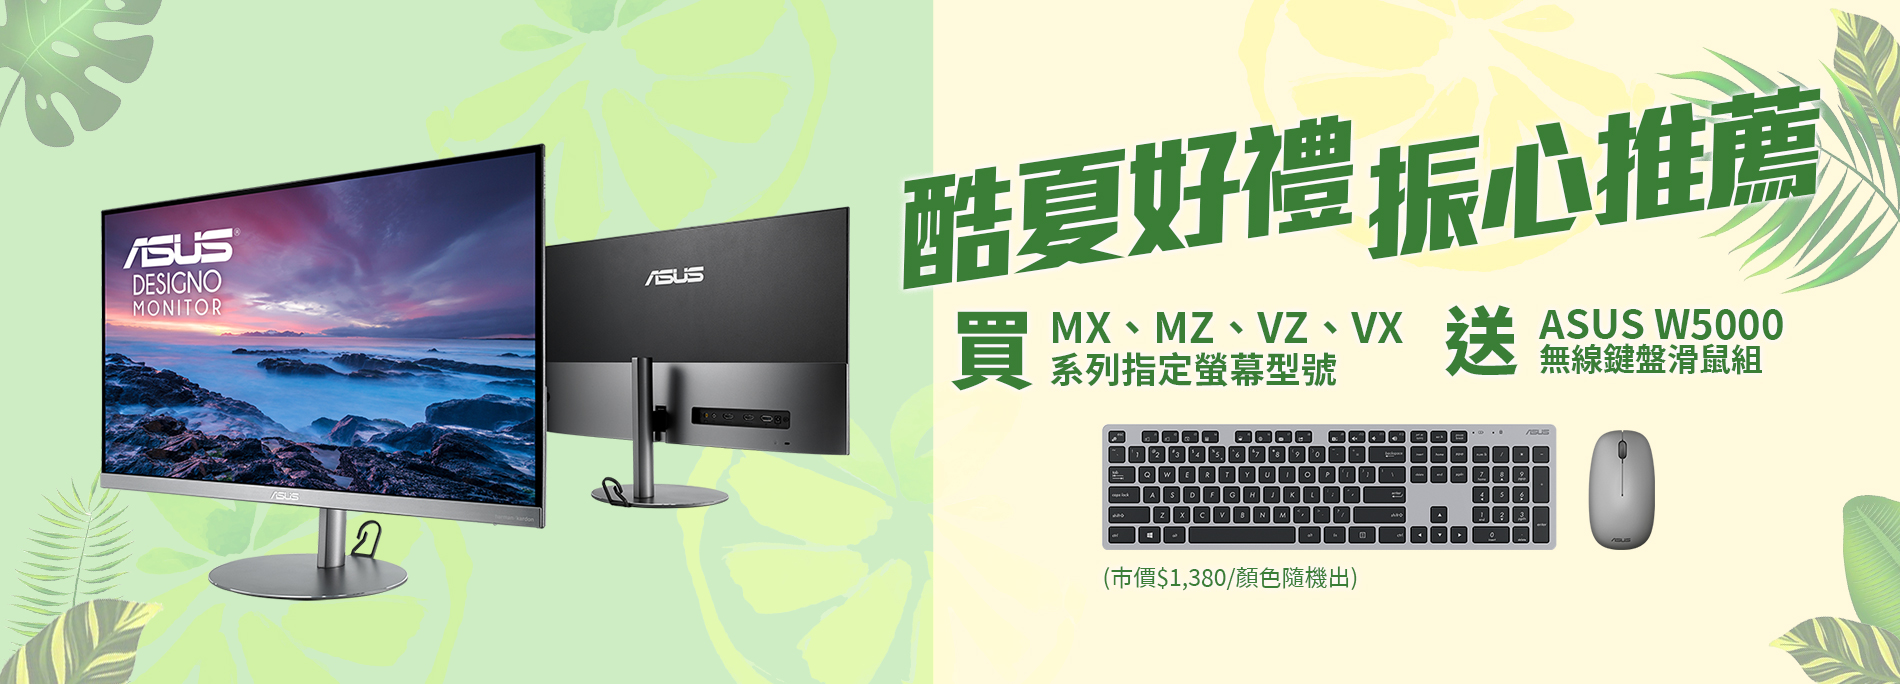 【酷夏好禮 振心推薦】活動期間購買華碩MX、MZ、VZ、VX系列指定螢幕型號，官網登錄送『ASUS W5000 無線鍵盤滑鼠組』(市價NT$1,380元，顏色隨機出貨)